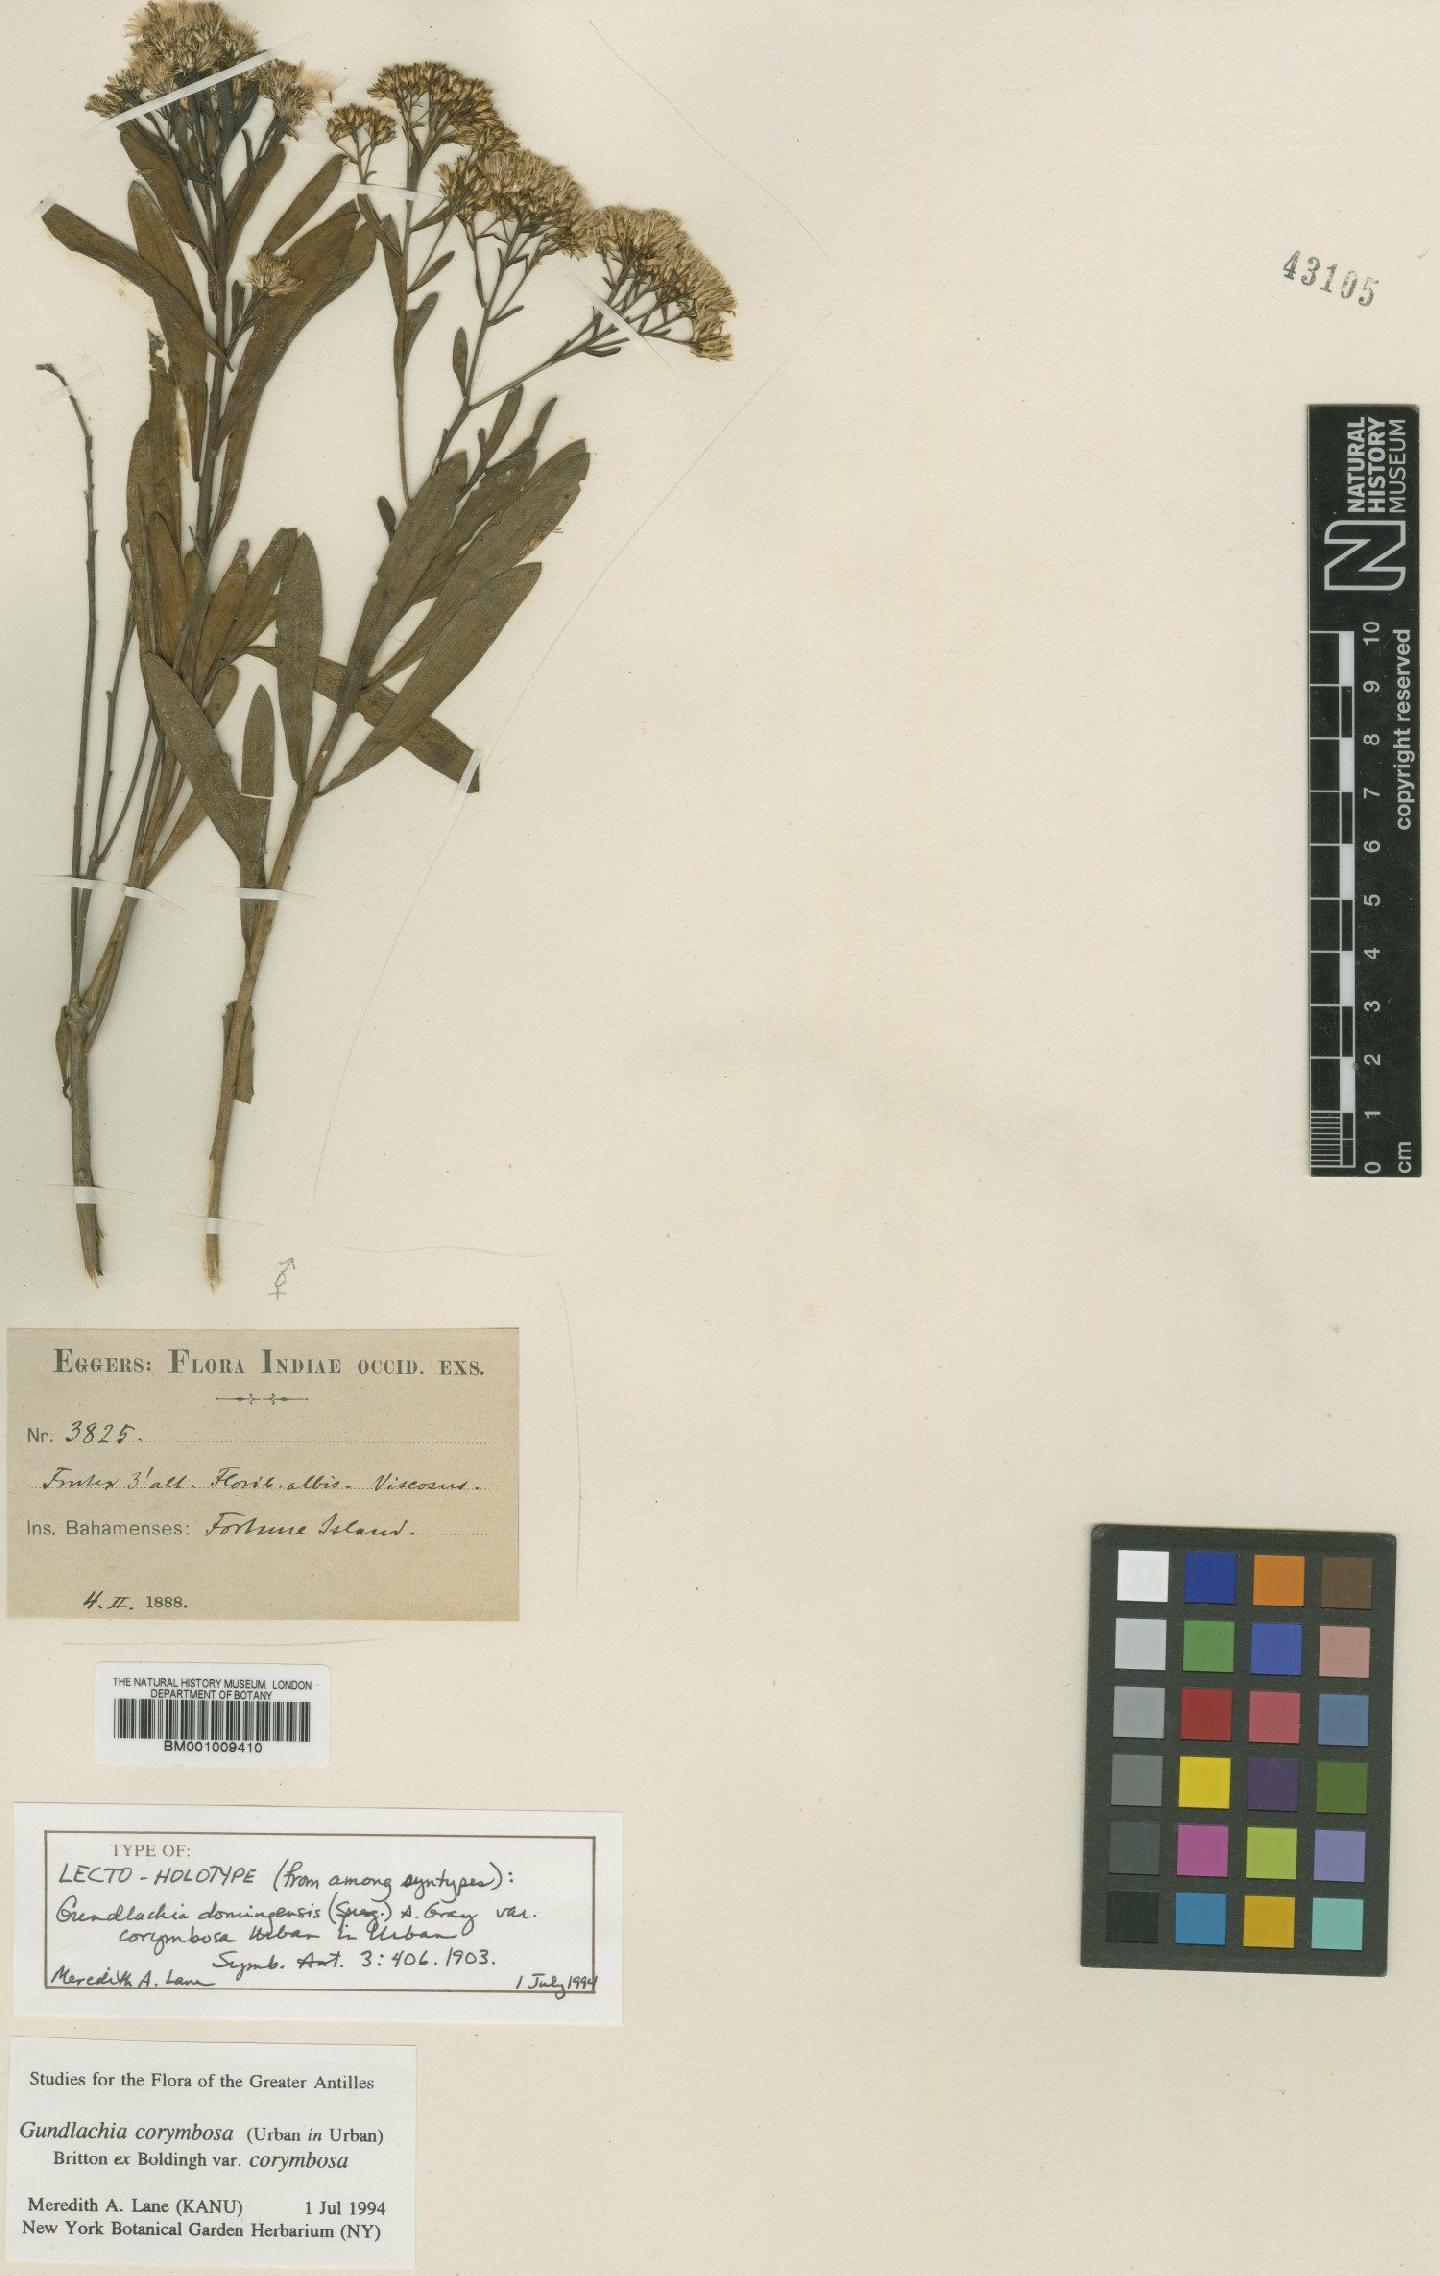 To NHMUK collection (Gundlachia corymbosa (Urb.) Britton ex Bold.; Lectotype; NHMUK:ecatalogue:609359)